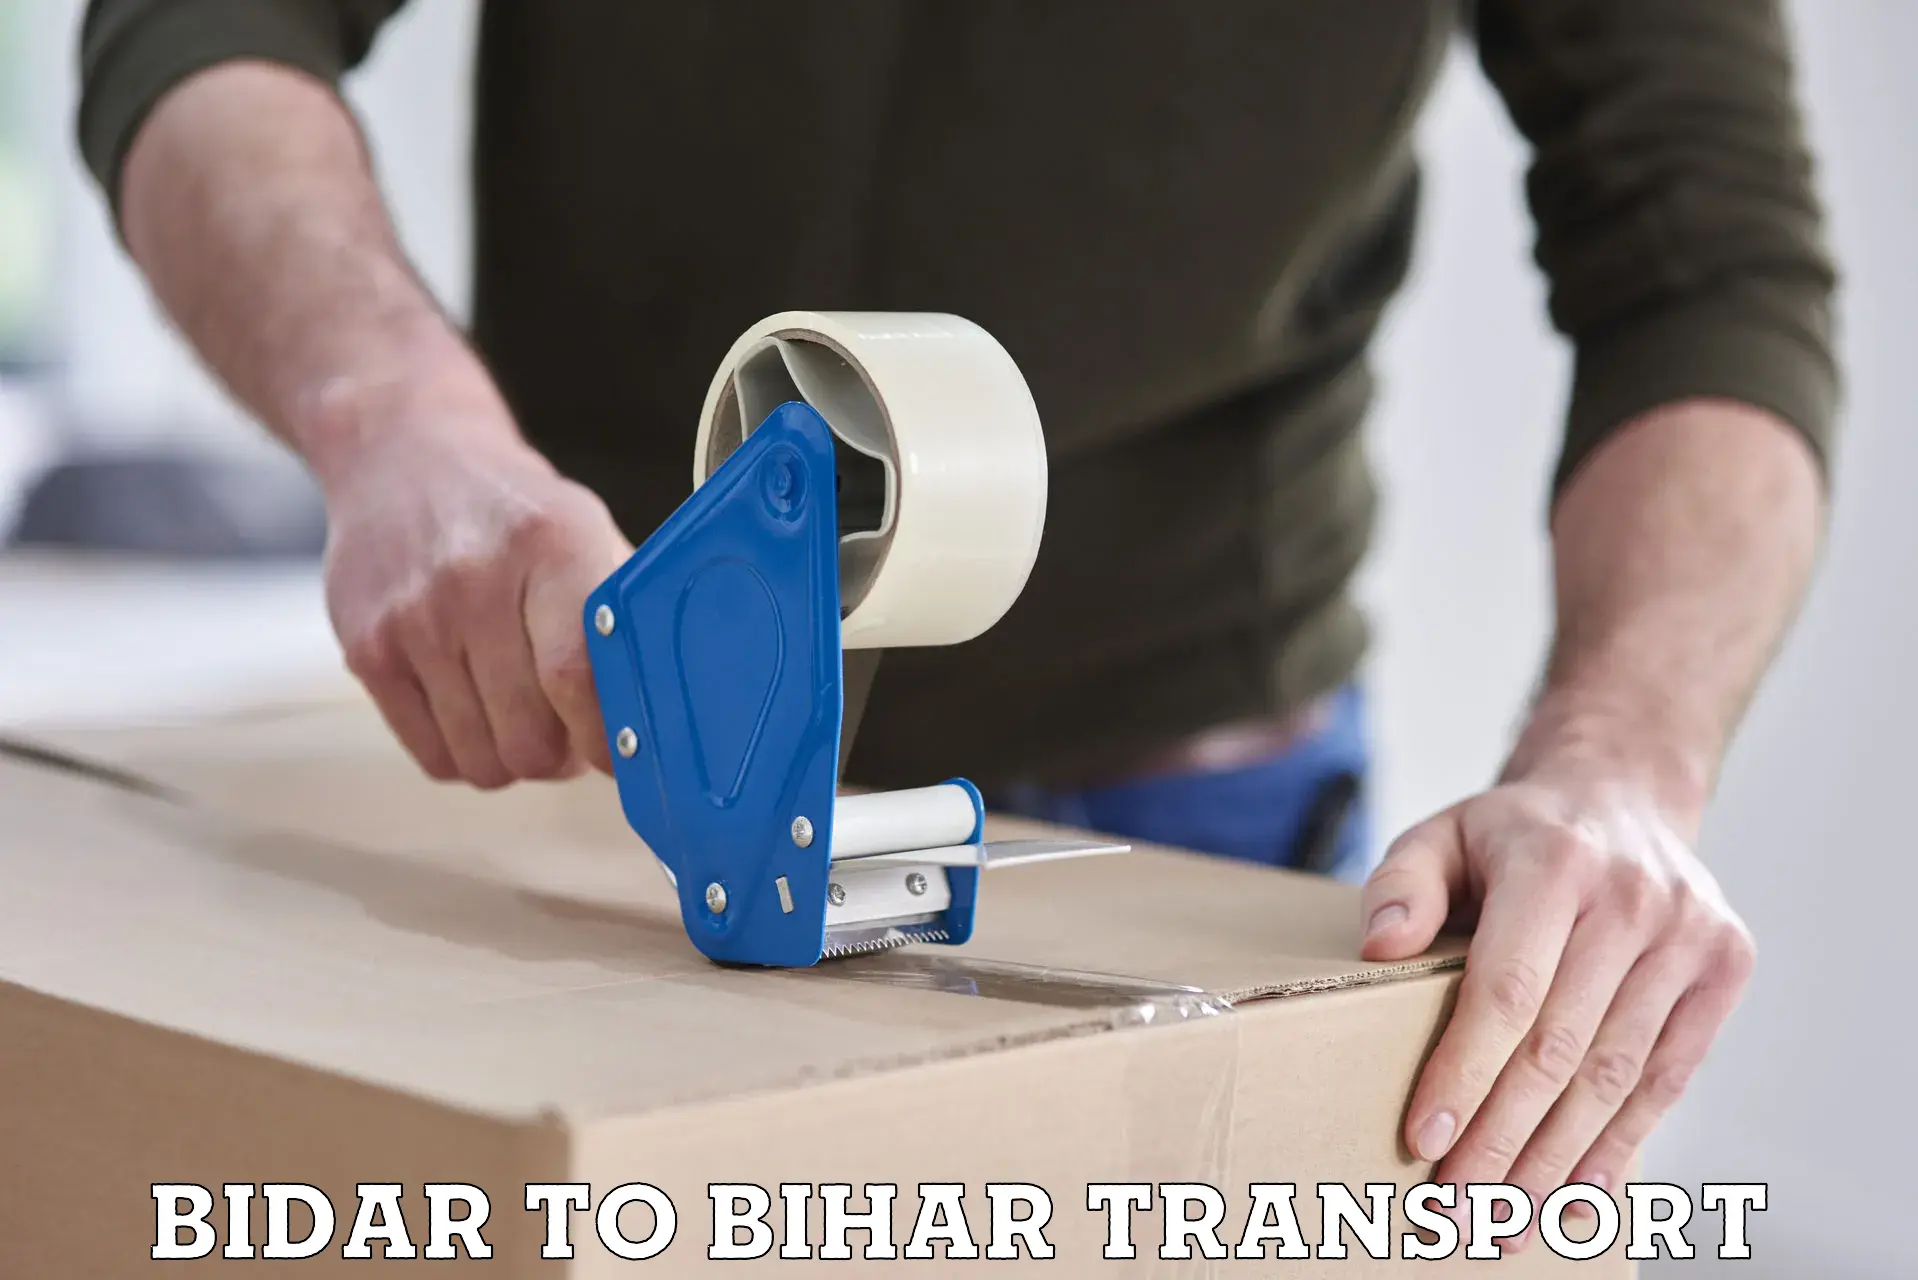 Furniture transport service Bidar to Kudra